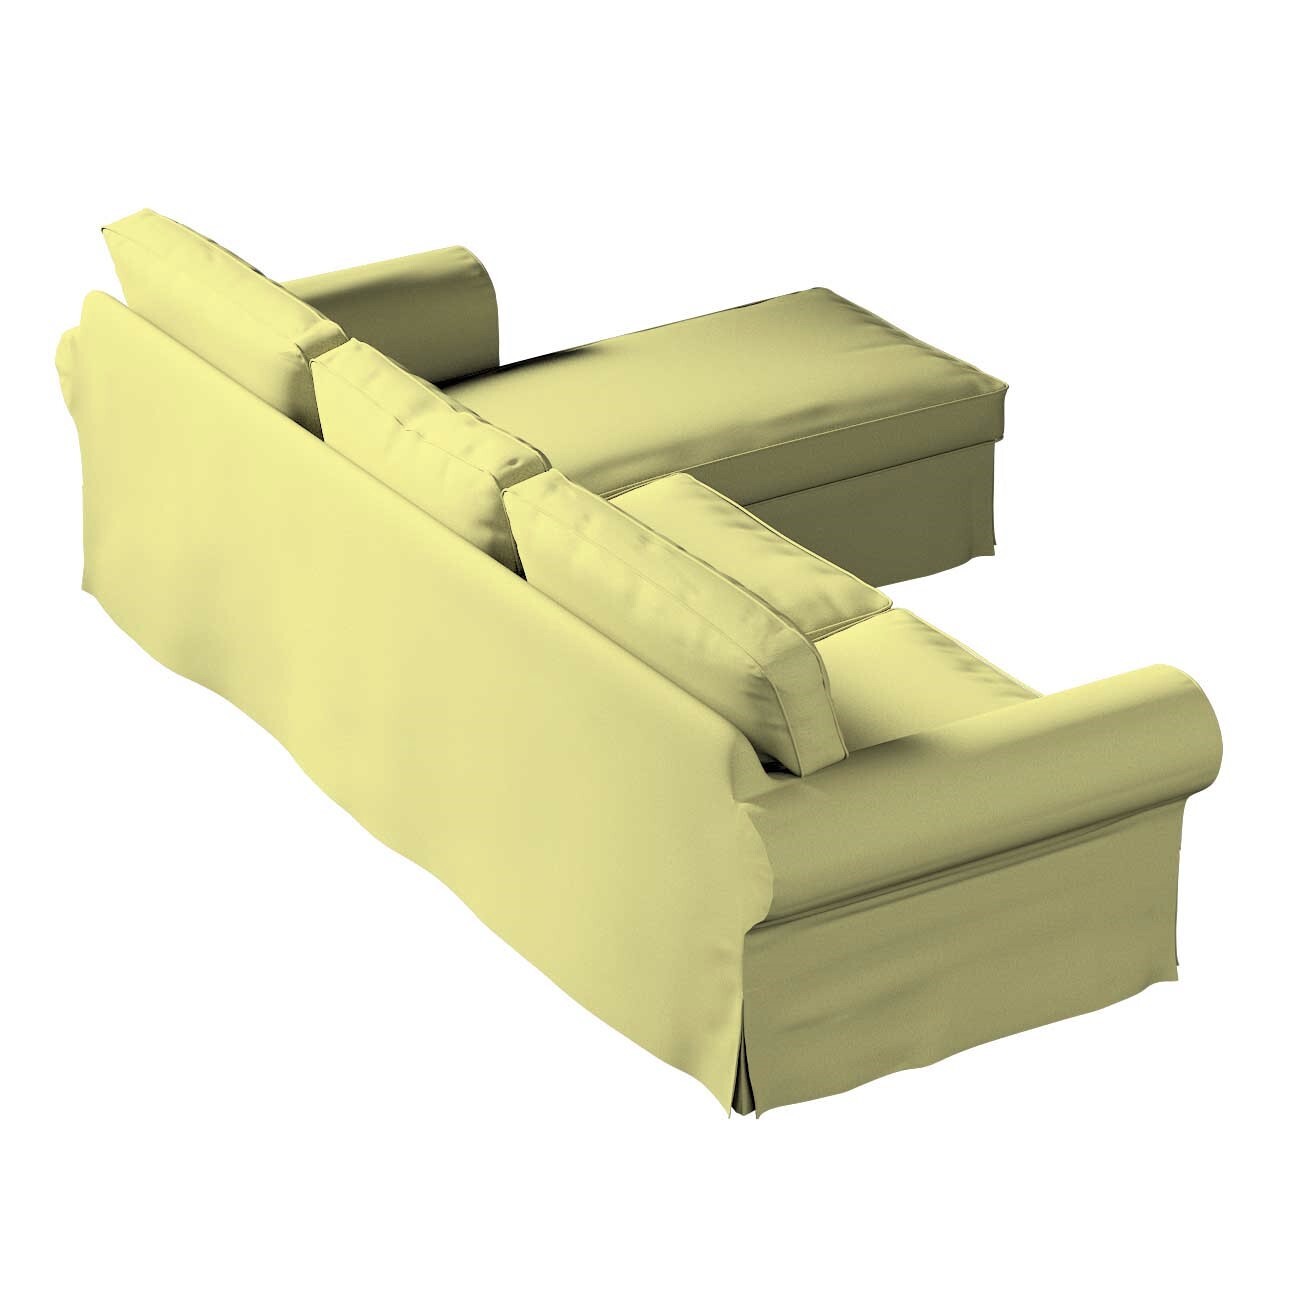 Bezug für Ektorp 2-Sitzer Sofa mit Recamiere, salbeigrün, Ektorp 2-Sitzer S günstig online kaufen